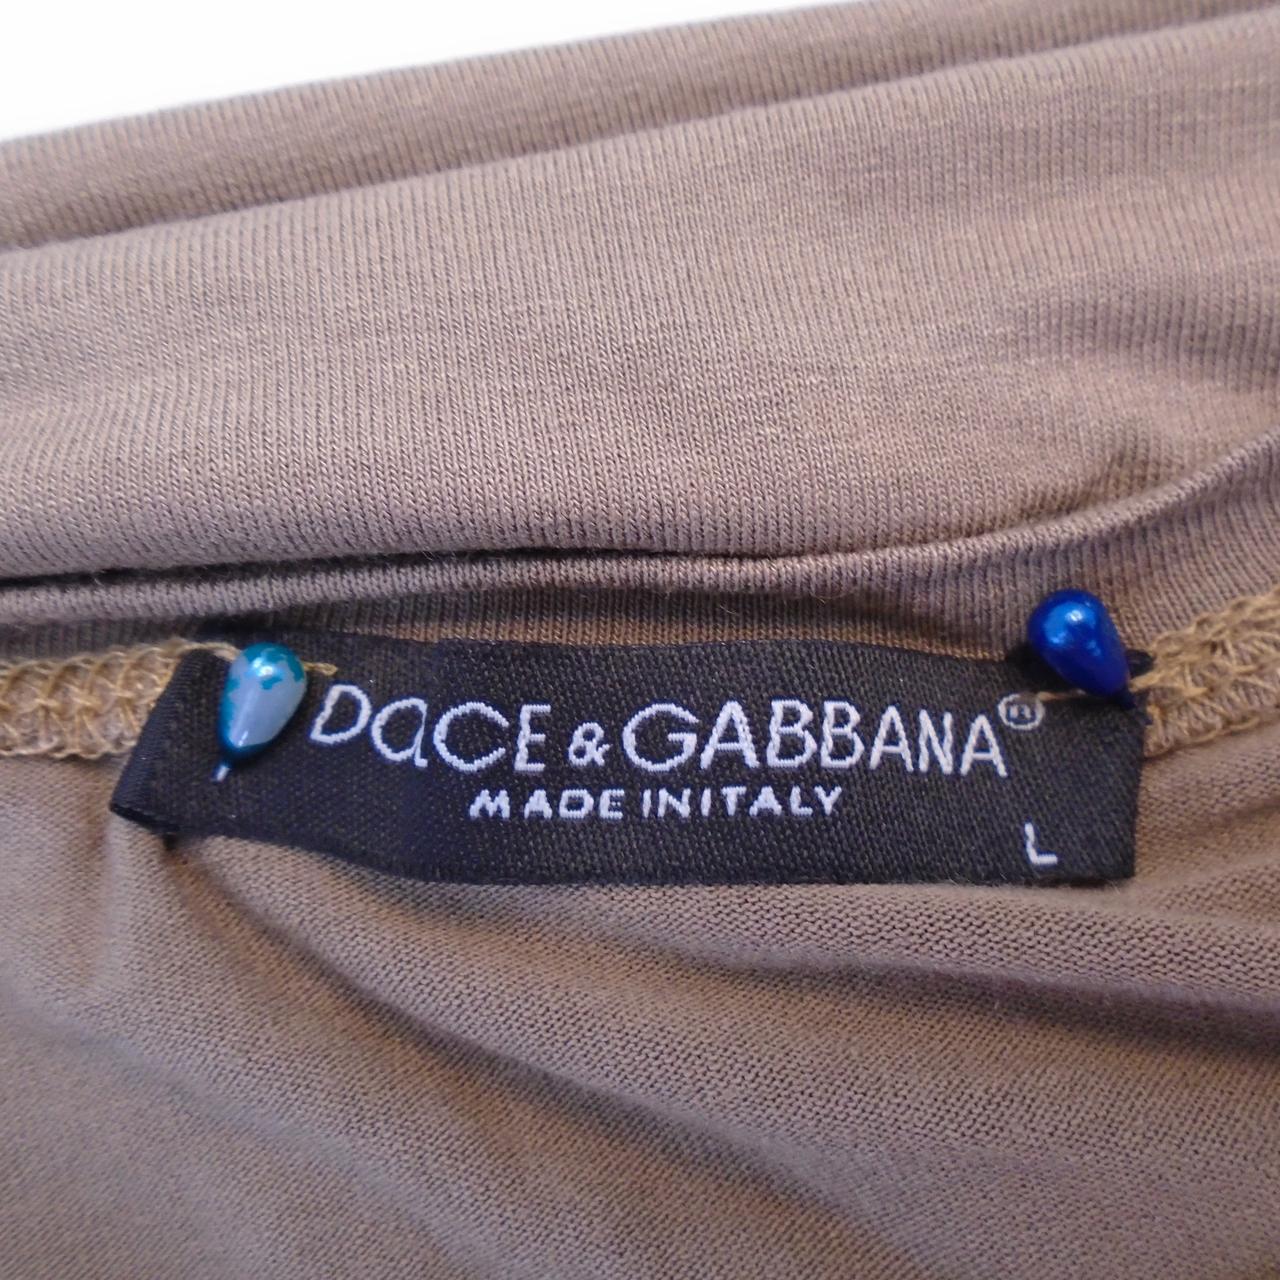 Camiseta Mujer Dolce & Gabbana.  Marrón.  L.Usado.  Bien